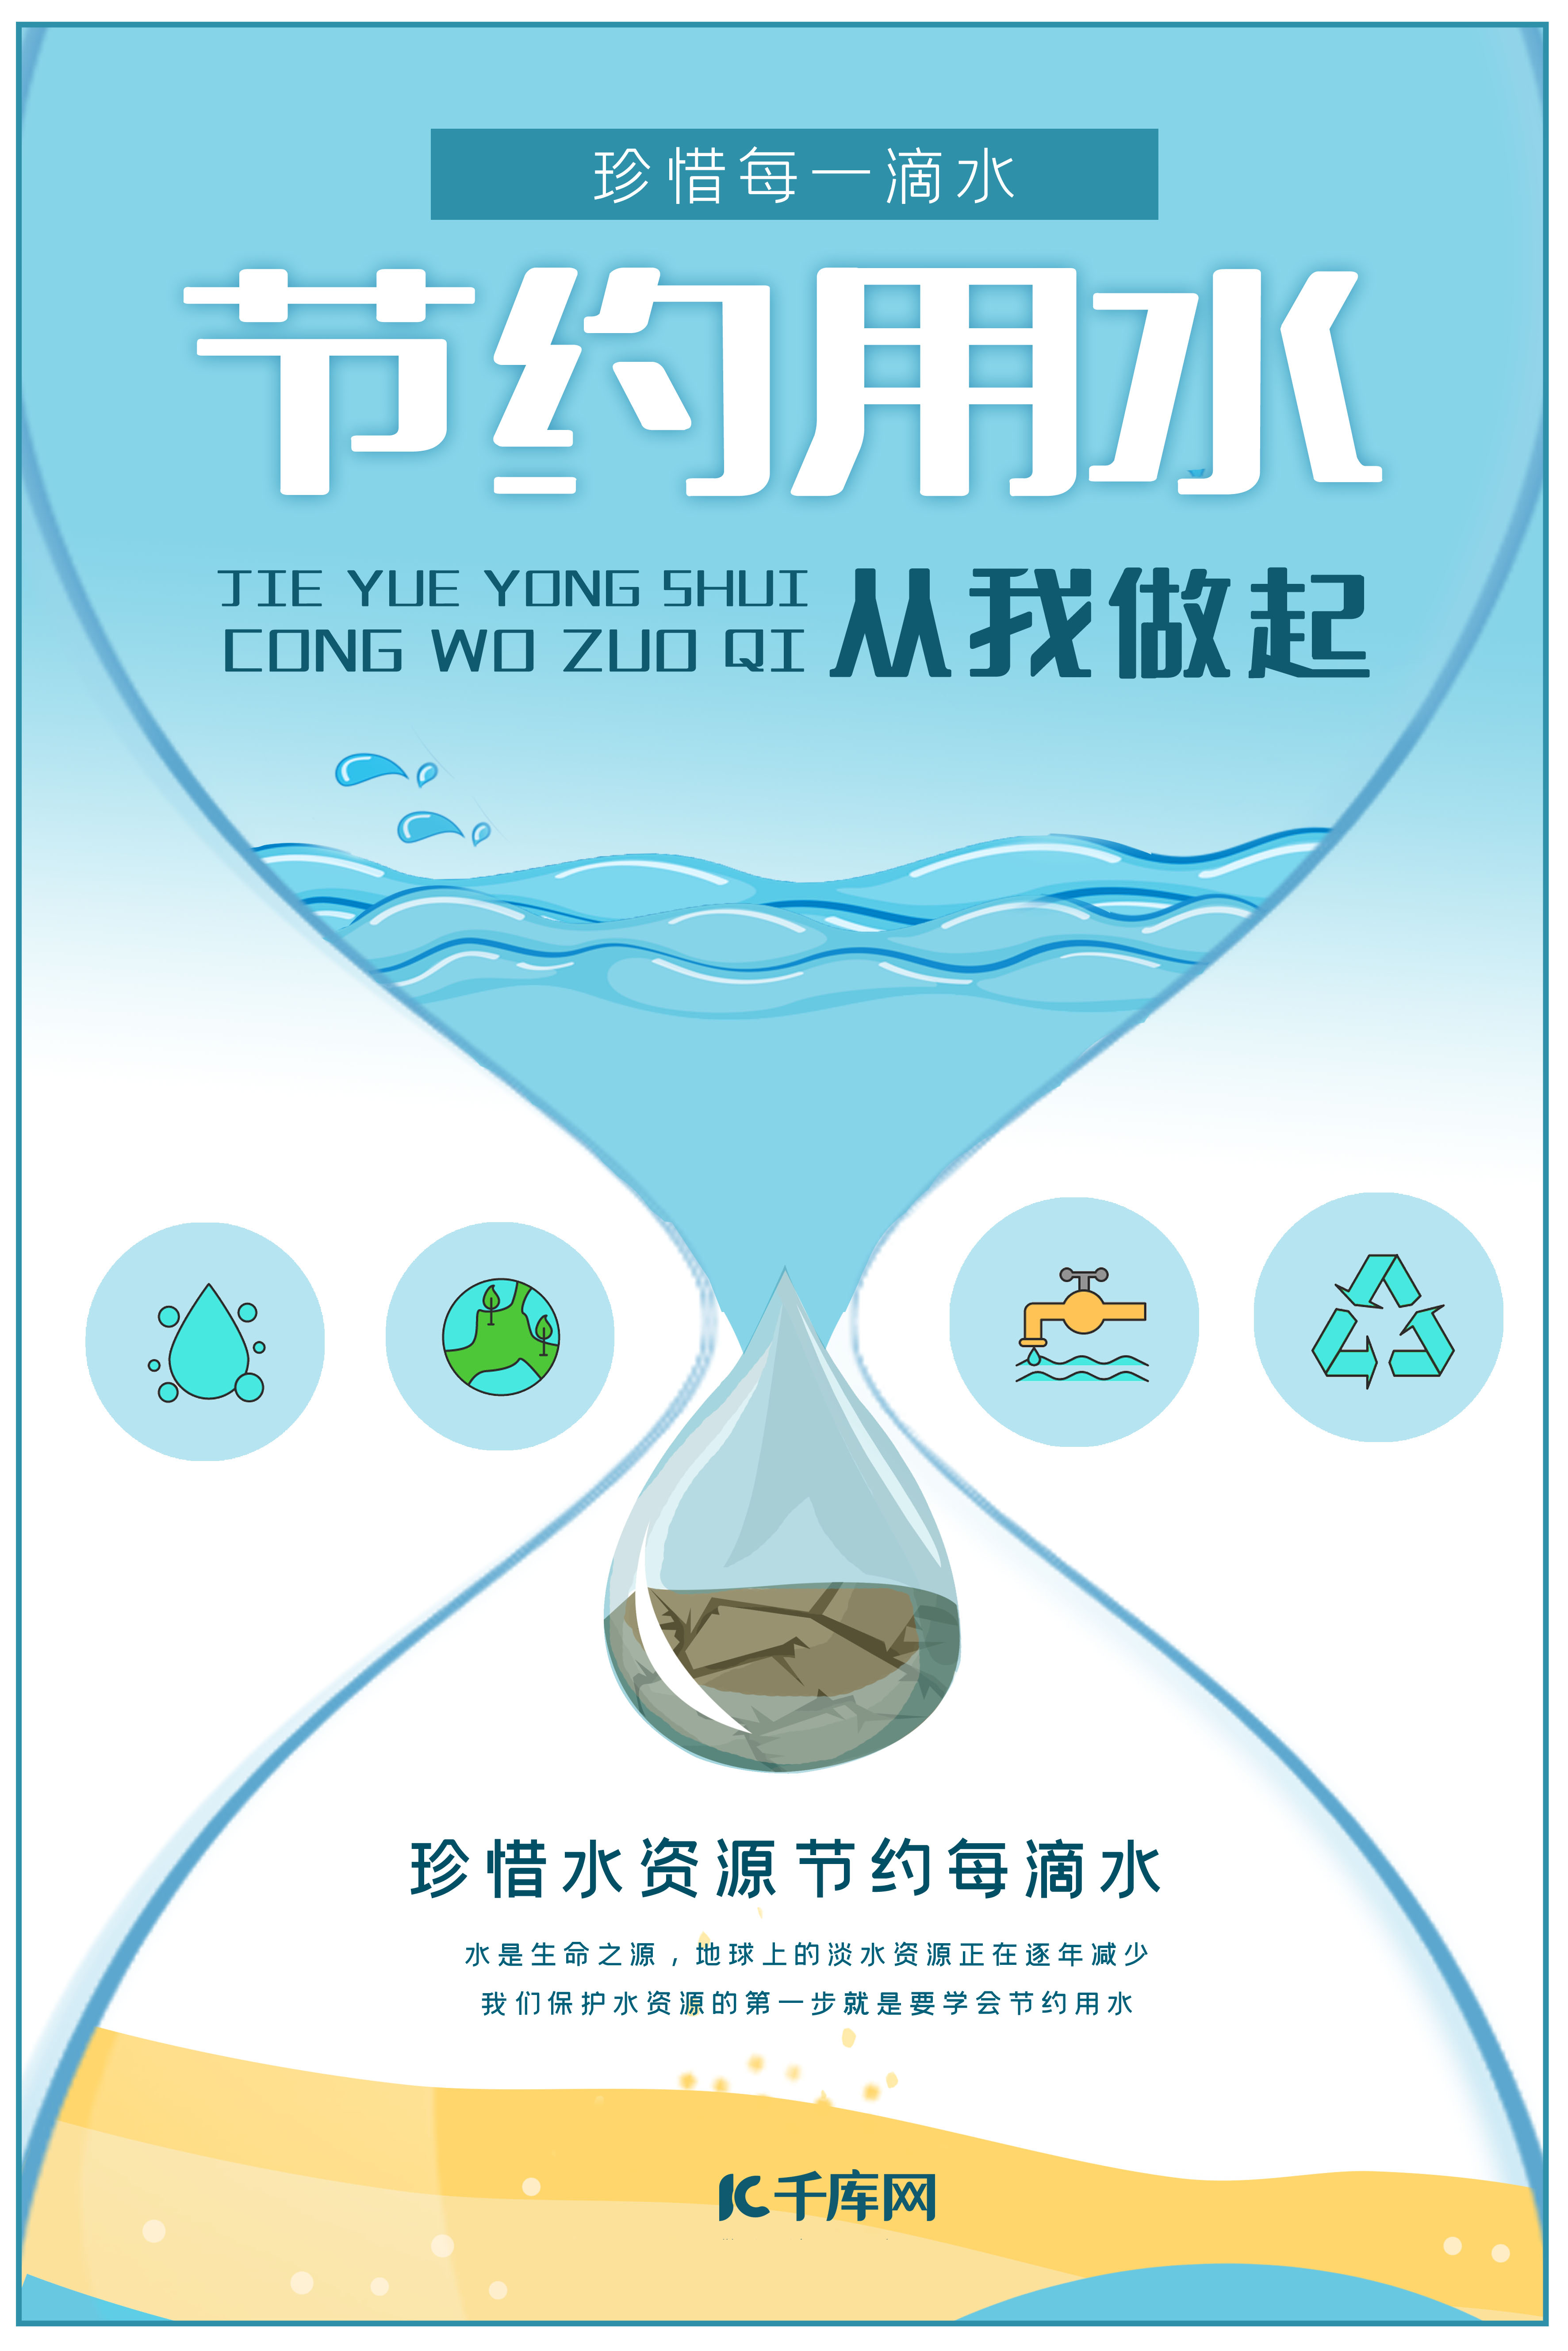 节约用水珍惜水资源公益宣传海报图片